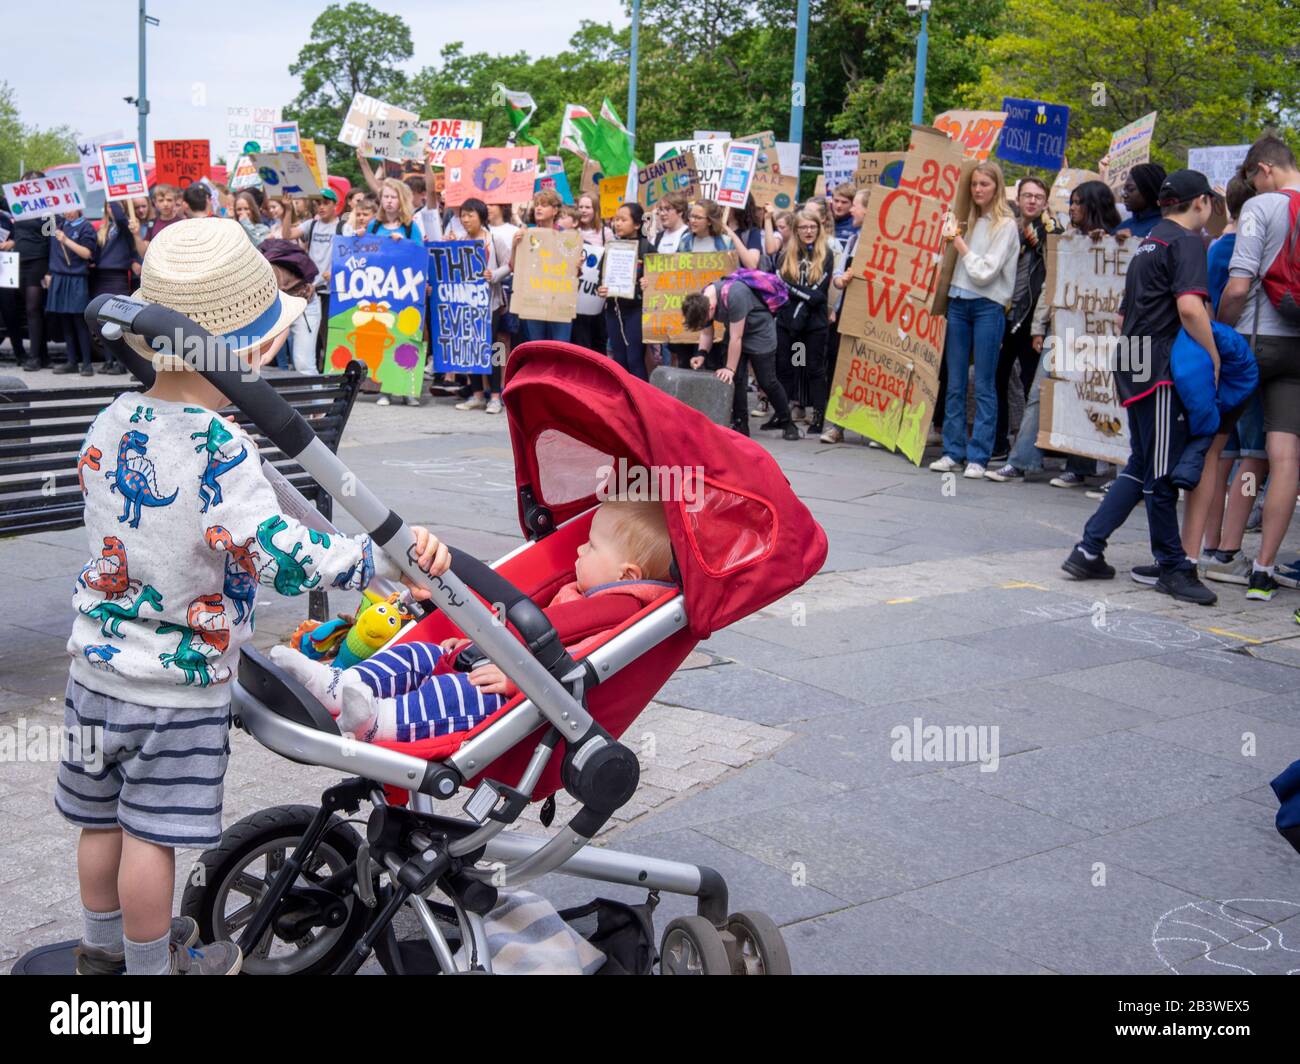 Cardiff, Wales - 24. Mai 2019: Kleinkinder und Babys, die Kinder beobachten, protestieren auf der Straße in Cardiff gegen den Klimawandel. Stockfoto